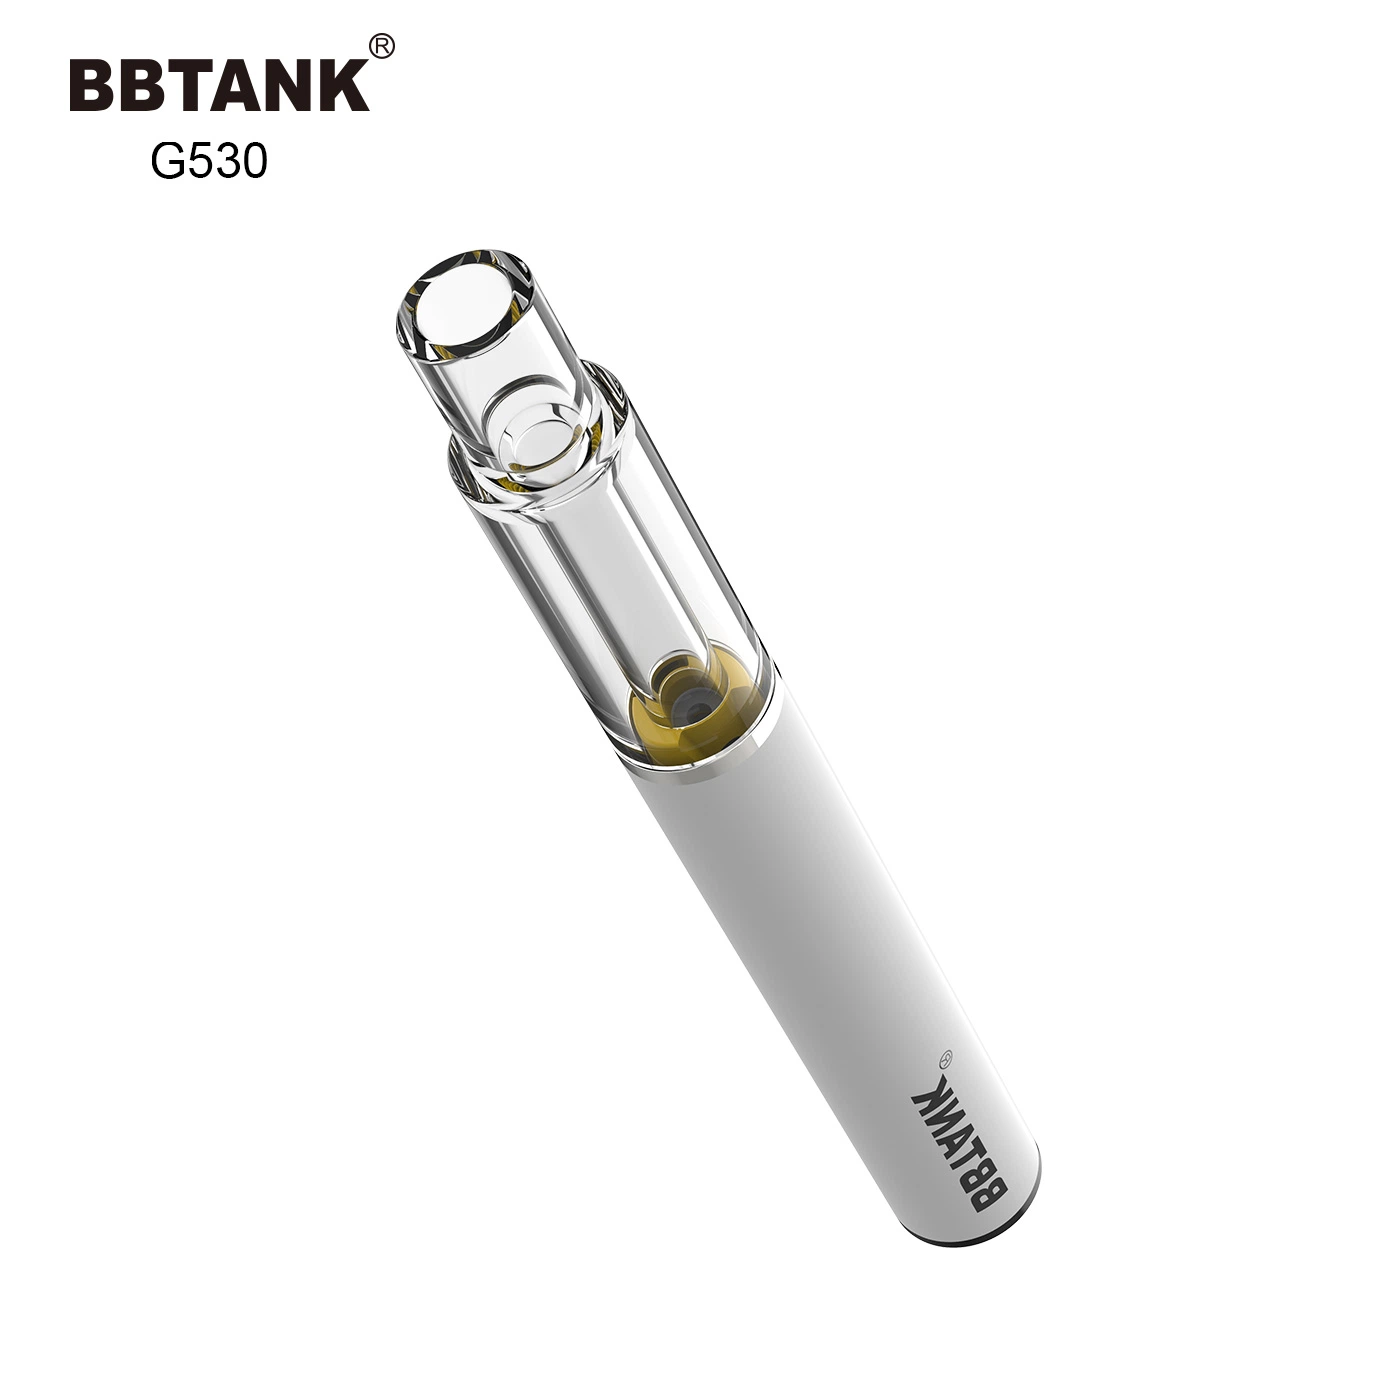 Bbtank All-Glass Disposable Vape Pen Designed for Pure Taste Live Resin Vape Hhc Vape Pen Wholesale Price